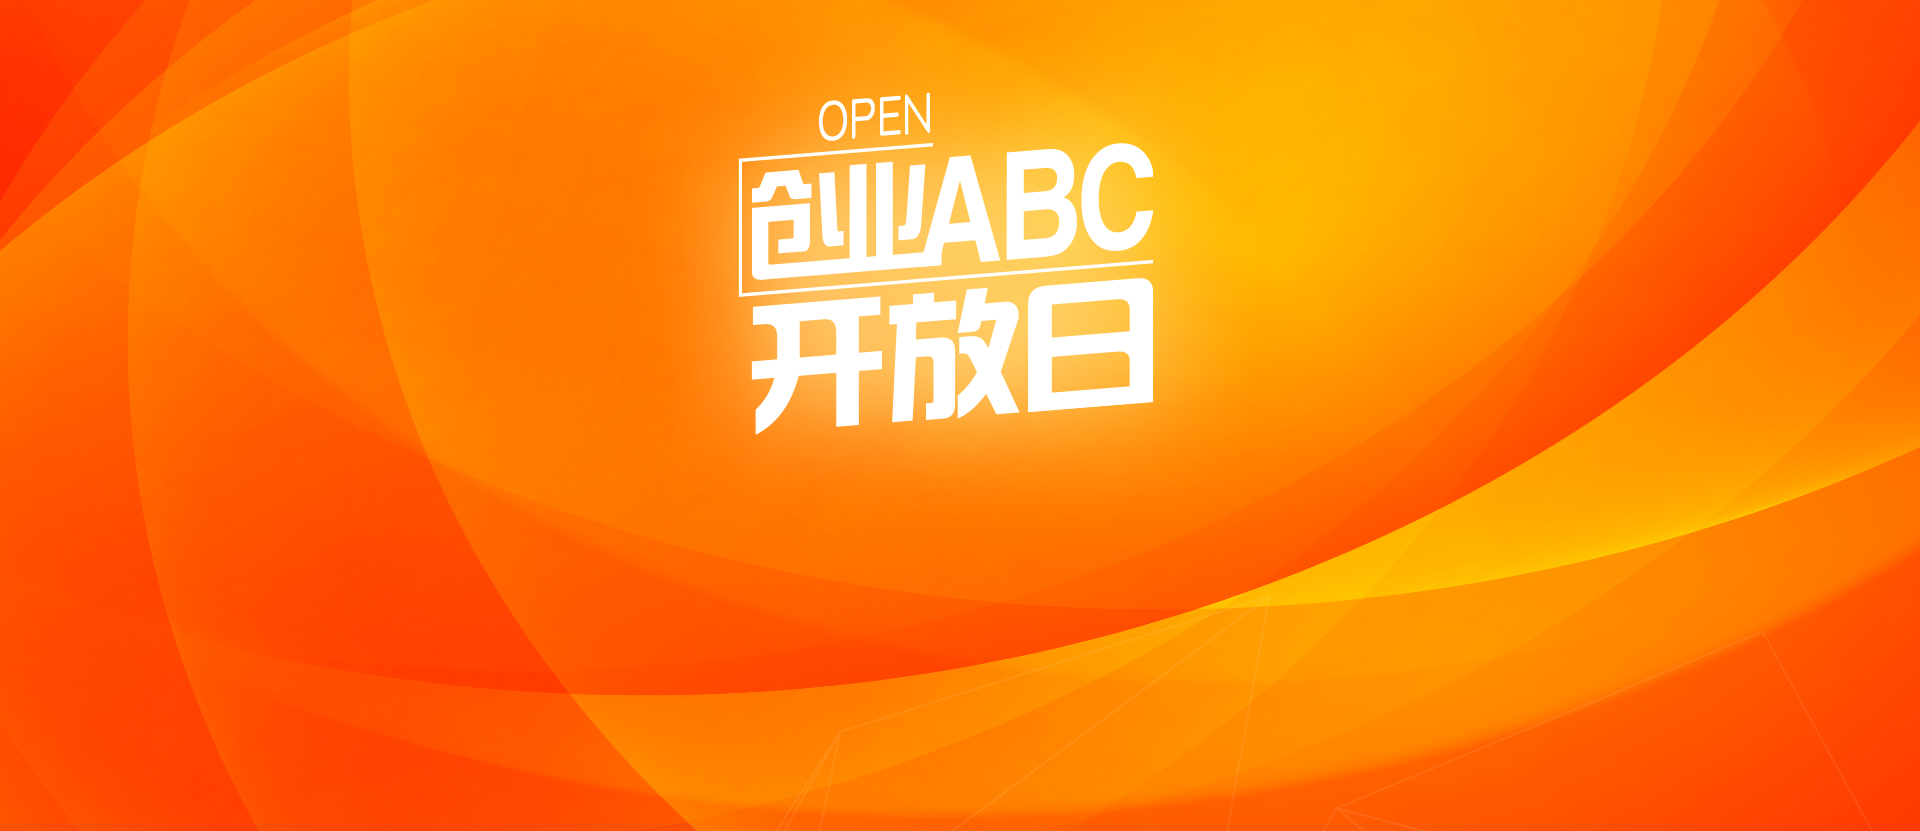 创业ABC开放日 - 创业ABC开放日 - 创业活动 - 创业工坊